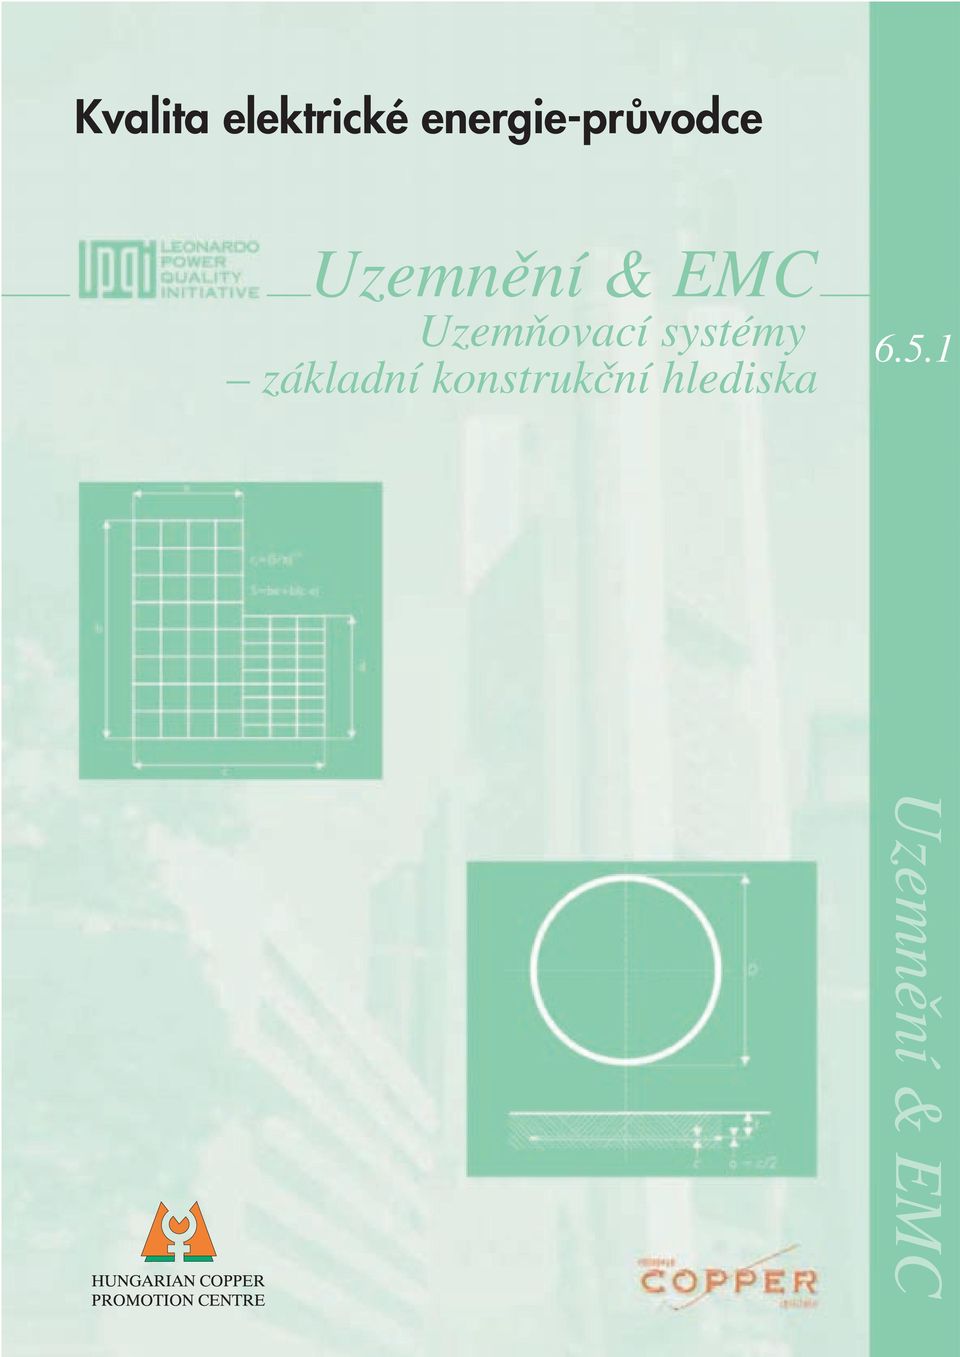 EMC UzemÀovací systémy